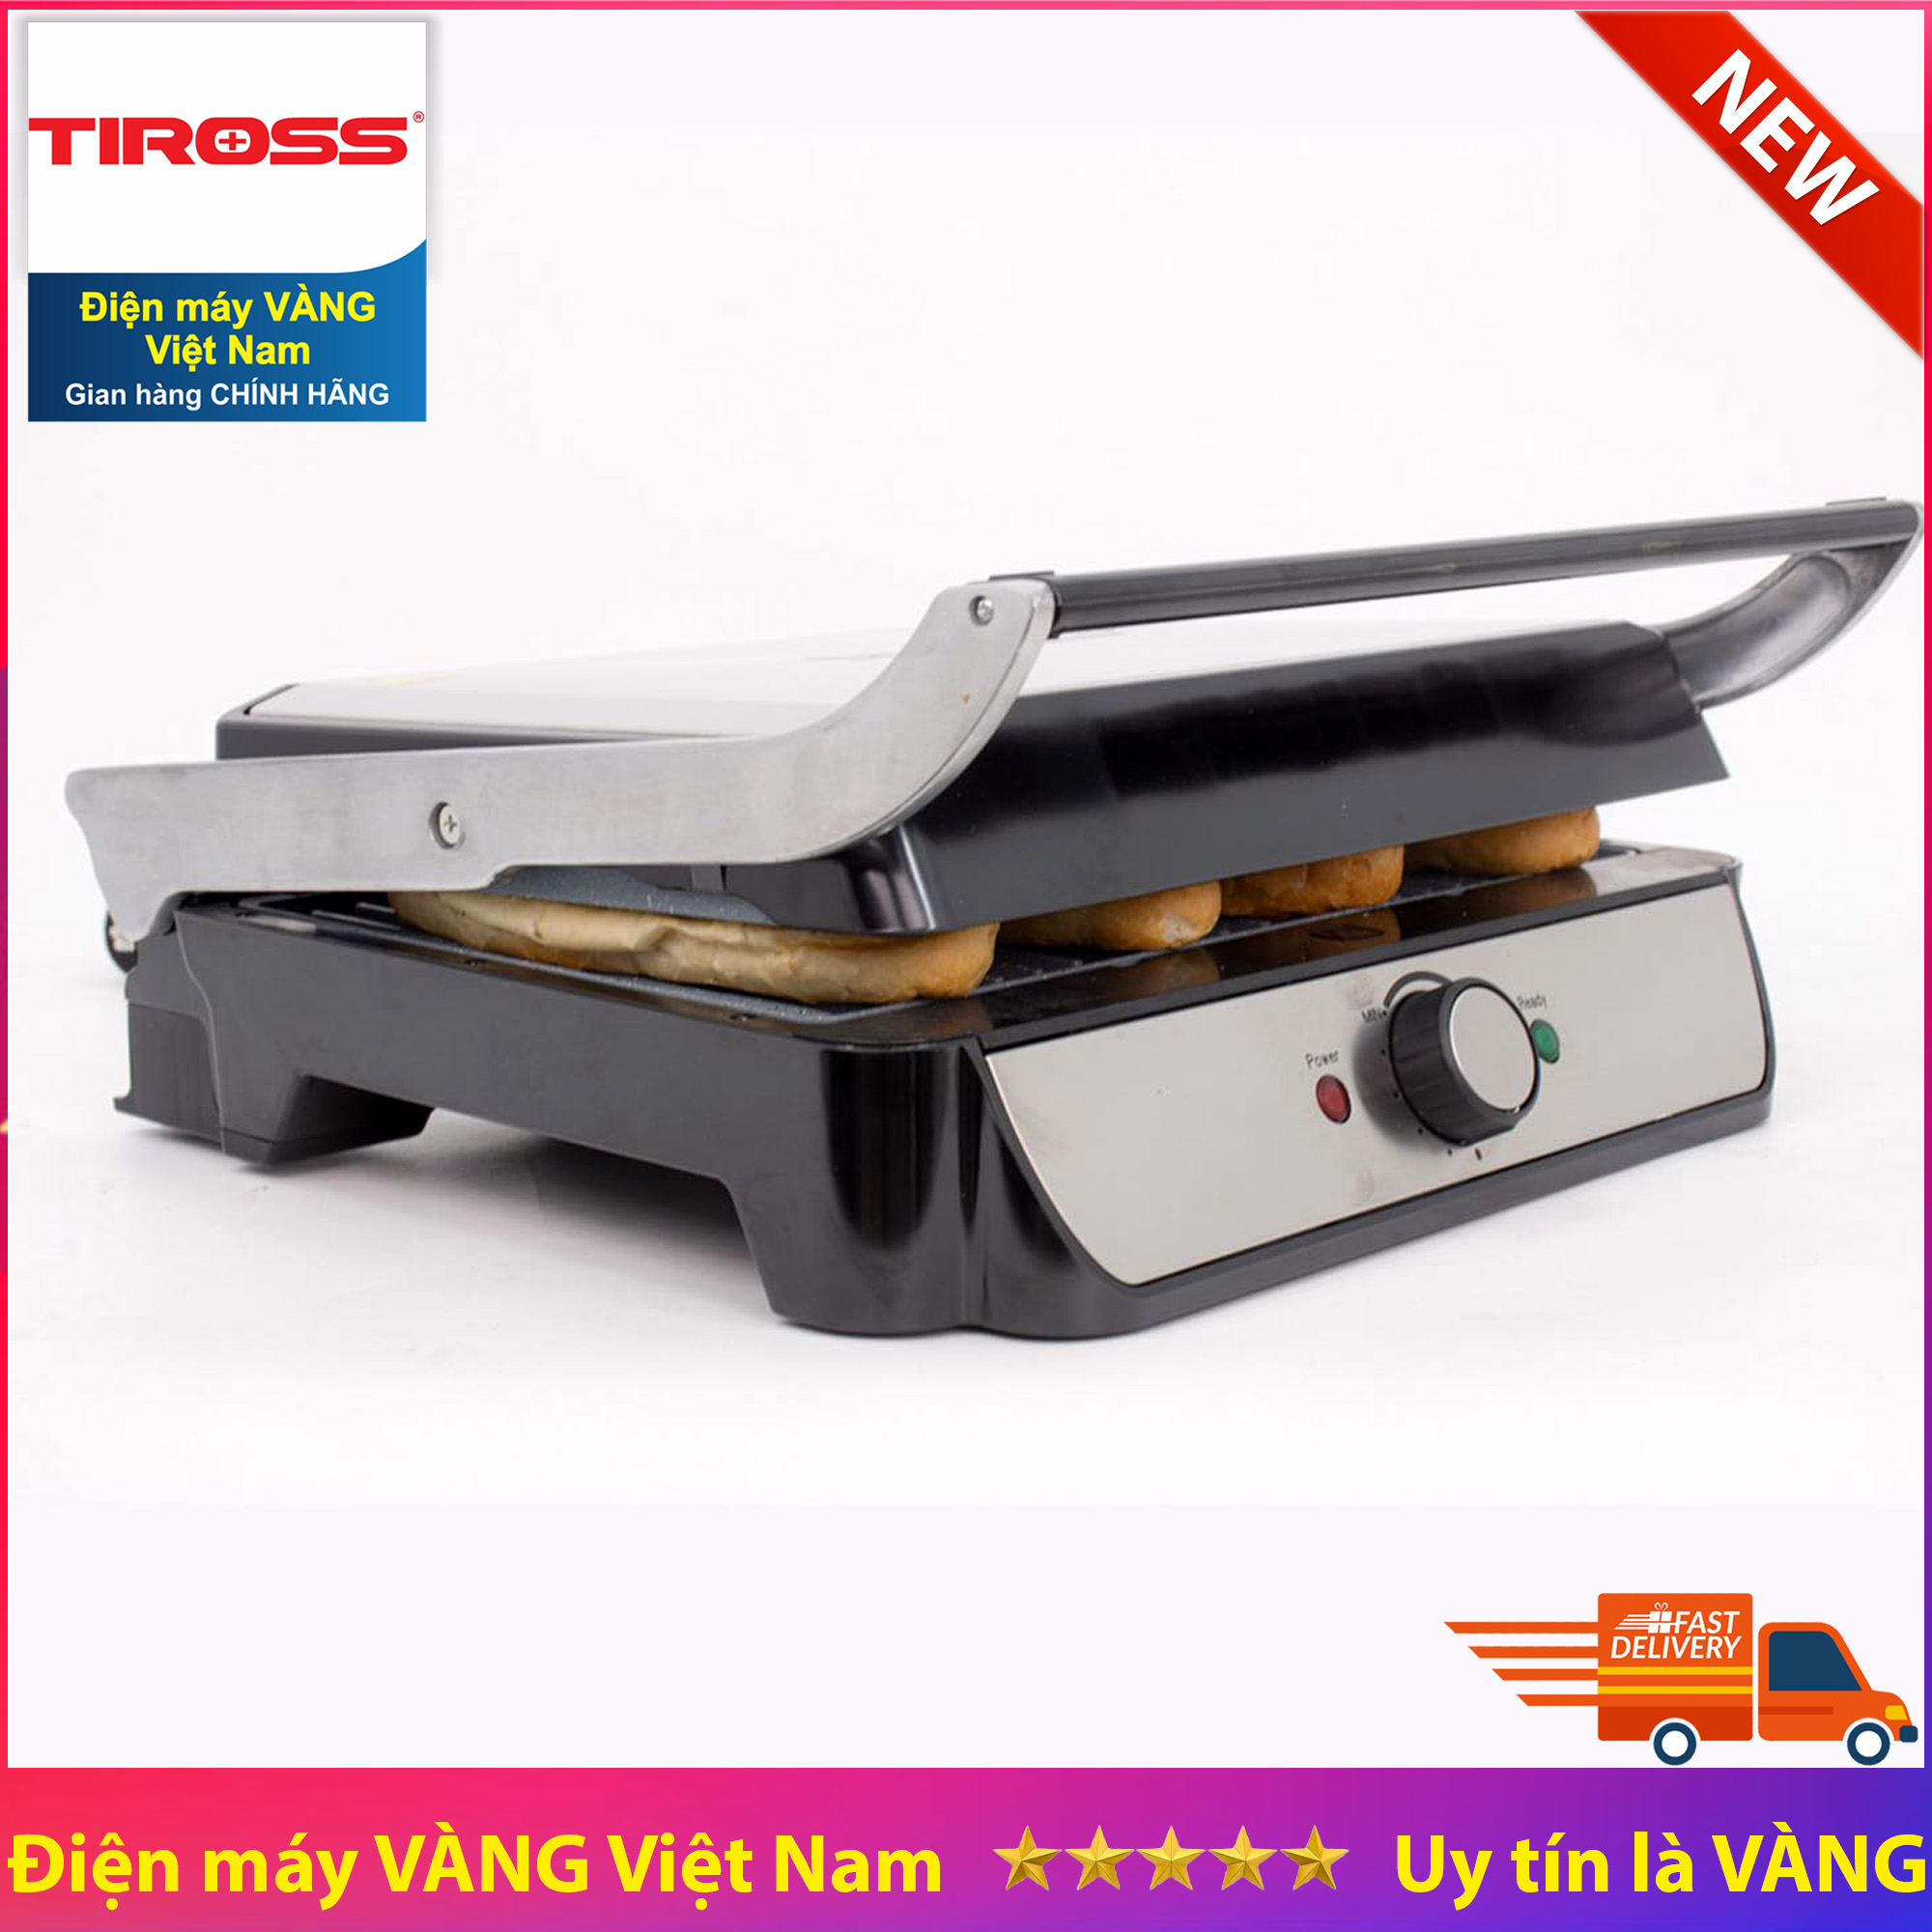 Máy kẹp nướng bánh mỳ đa năng Tiross TS9654